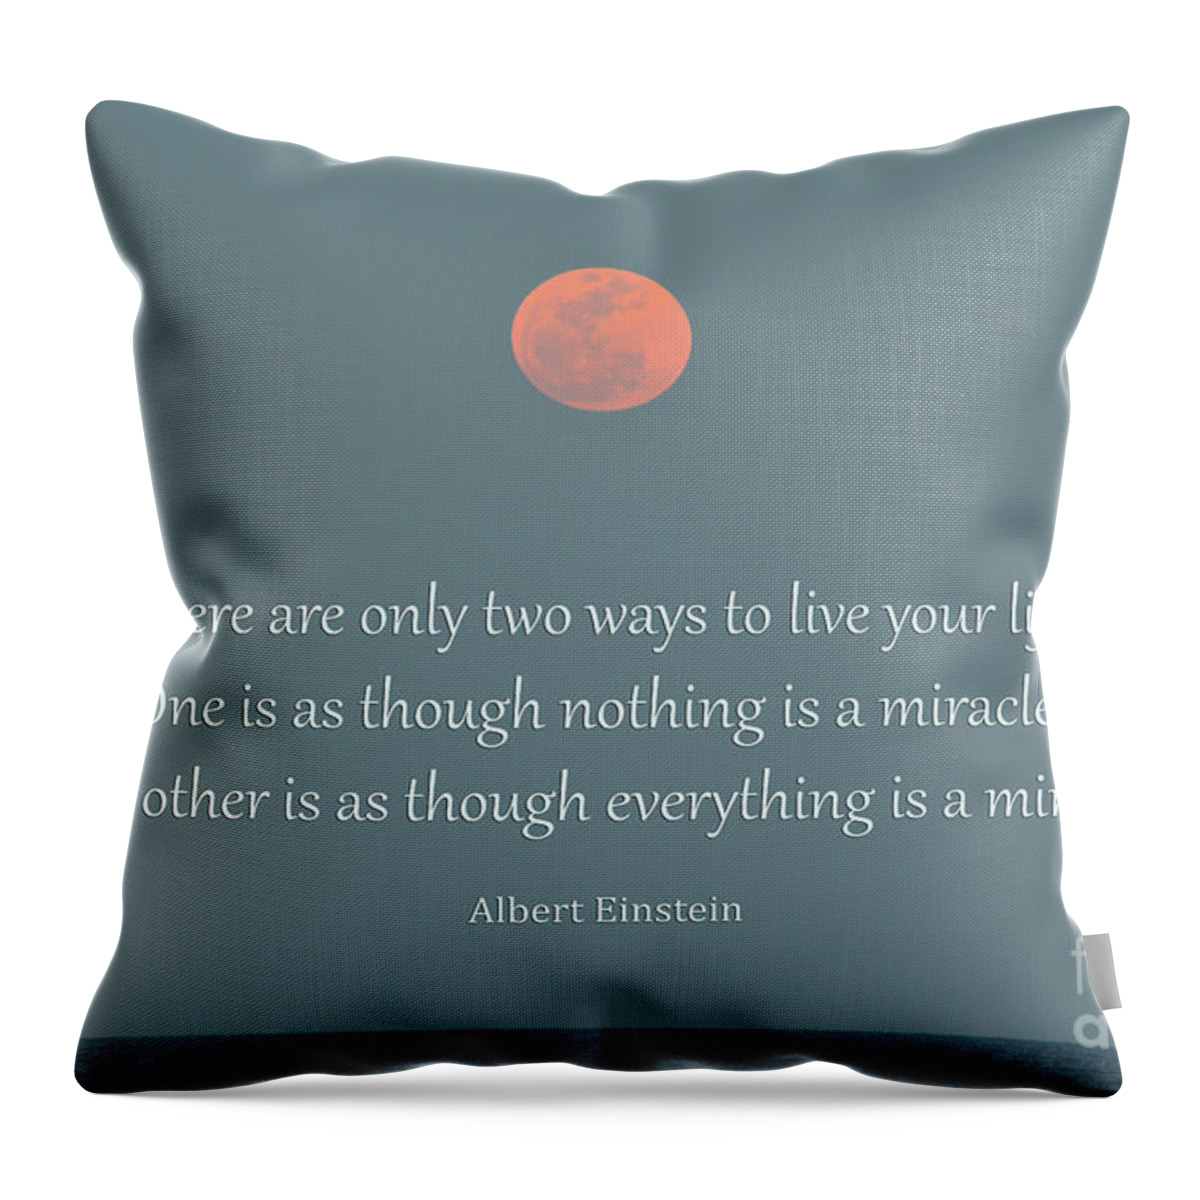 Albert Einstein Throw Pillow featuring the photograph 55- Albert Einstein by Joseph Keane